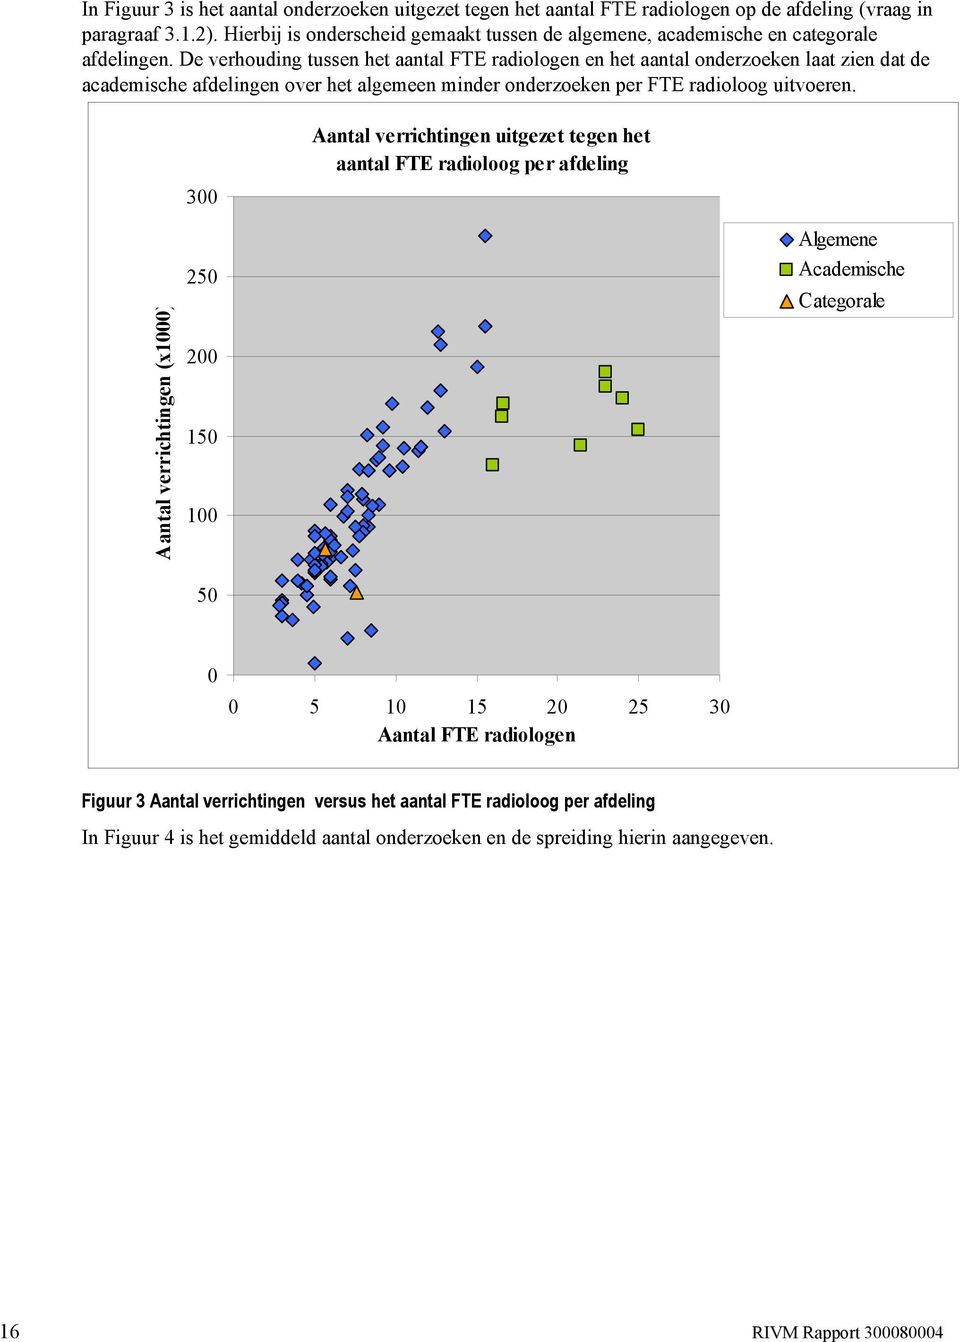 De verhouding tussen het aantal FTE radiologen en het aantal onderzoeken laat zien dat de academische afdelingen over het algemeen minder onderzoeken per FTE radioloog uitvoeren.